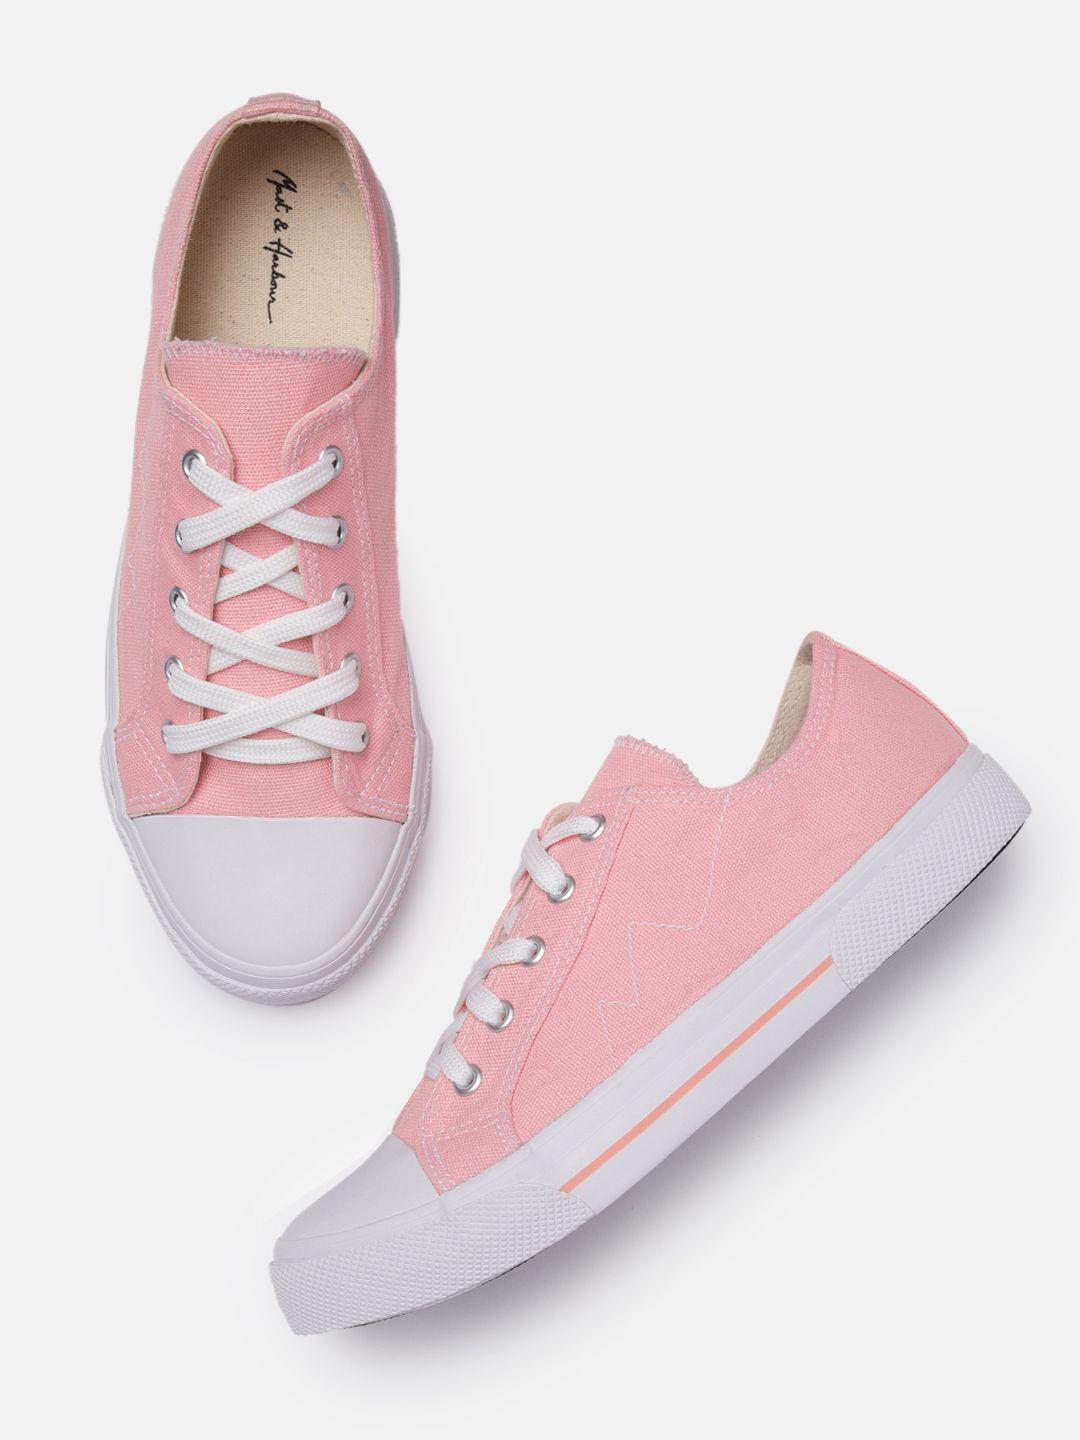 mast & harbour women pink solid sneakers